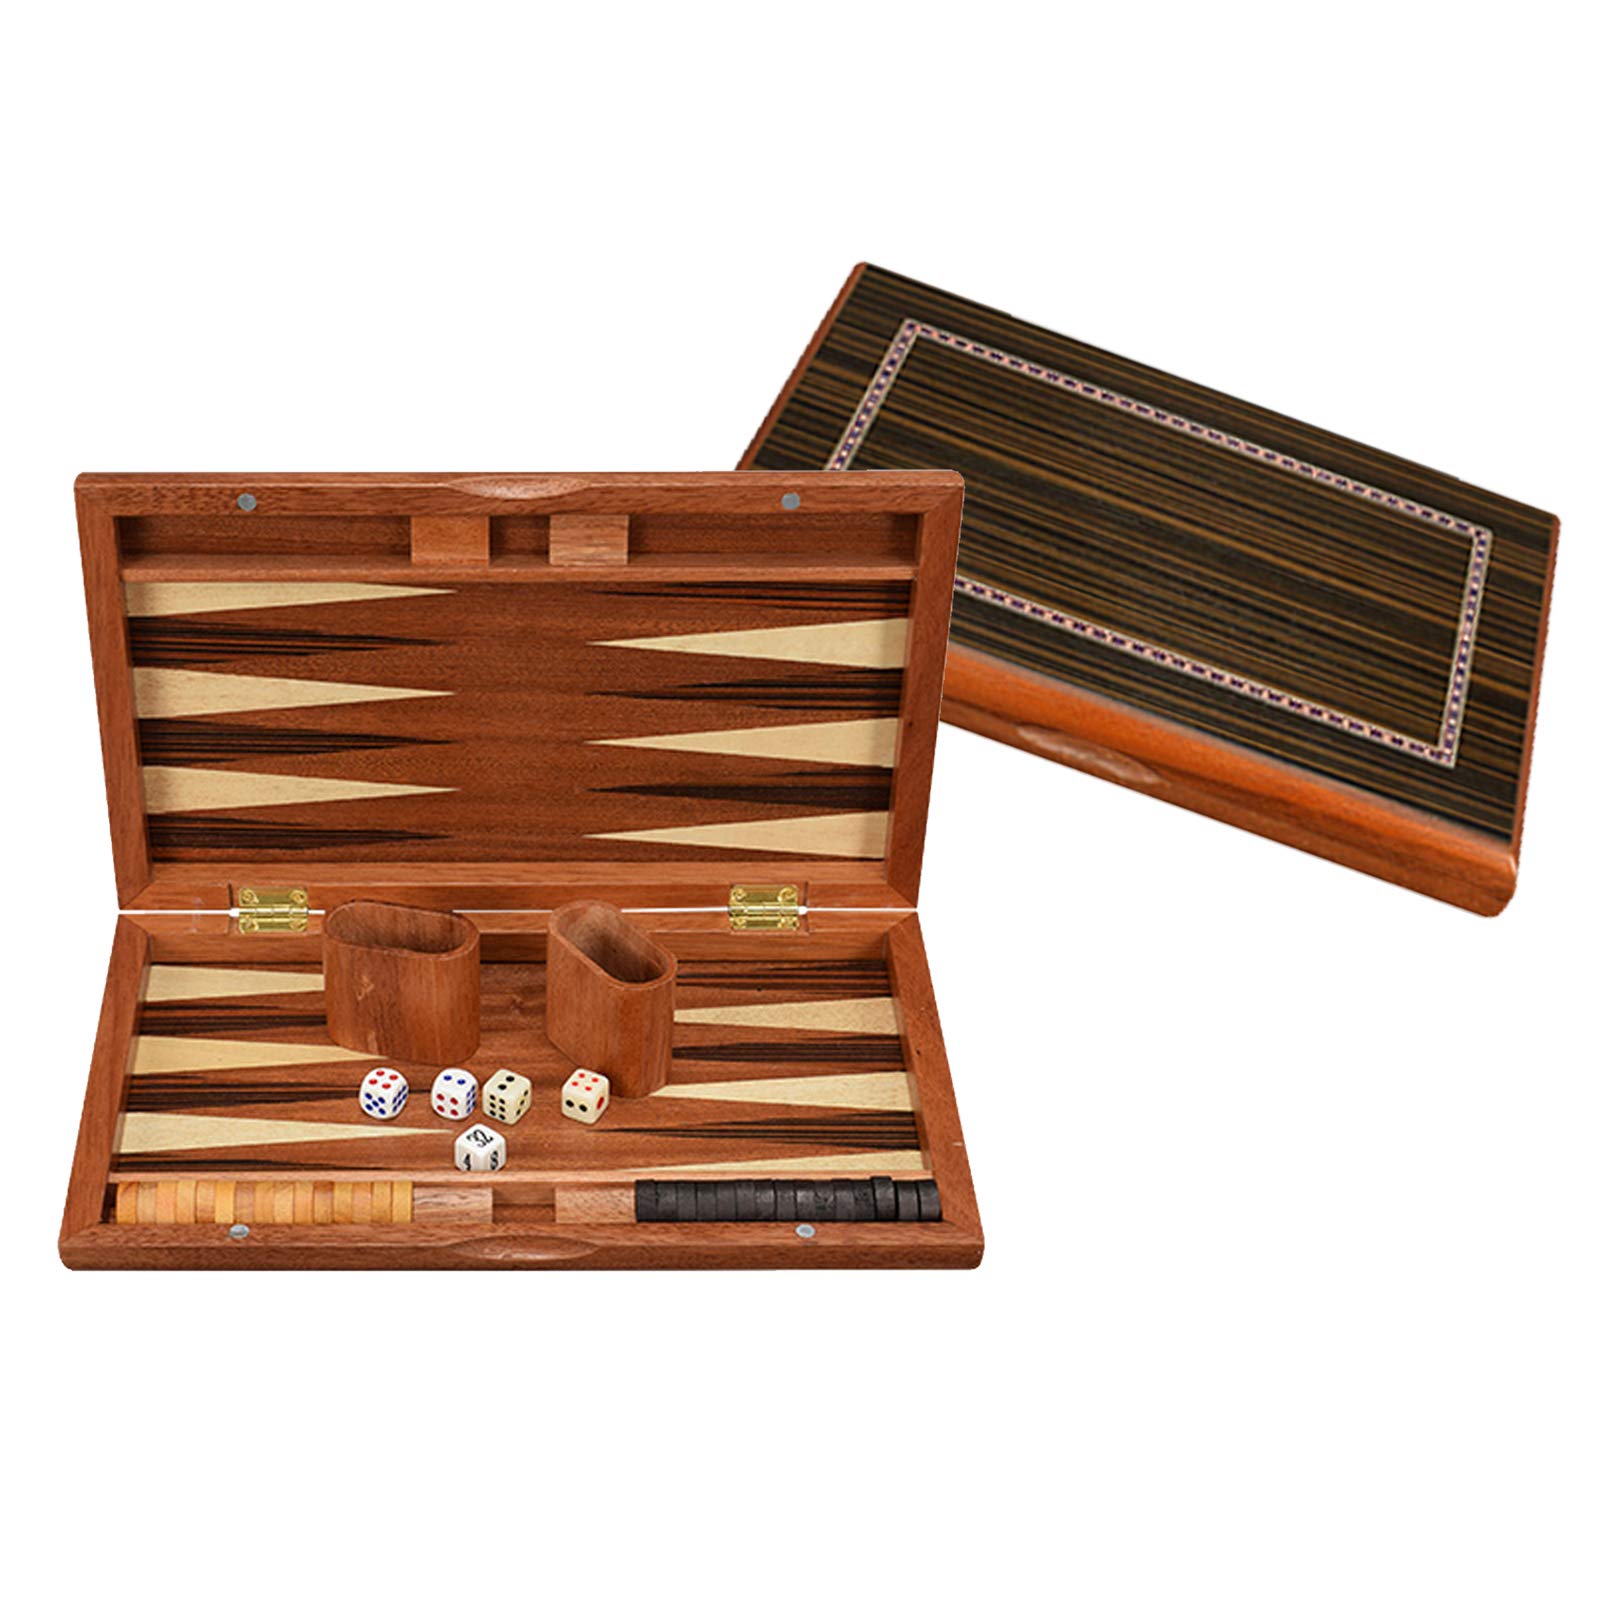 Pevfeciy Tavla - Backgammon - Fold Size 33x21x4.2cm, aus Holz (die Mitteldichte Holzfaserplatte-MDF Platte), Inklusive Komplettem Zubehör, Backgammon Reise Hochwertiges Set,Holzschachfiguren,13 Zoll